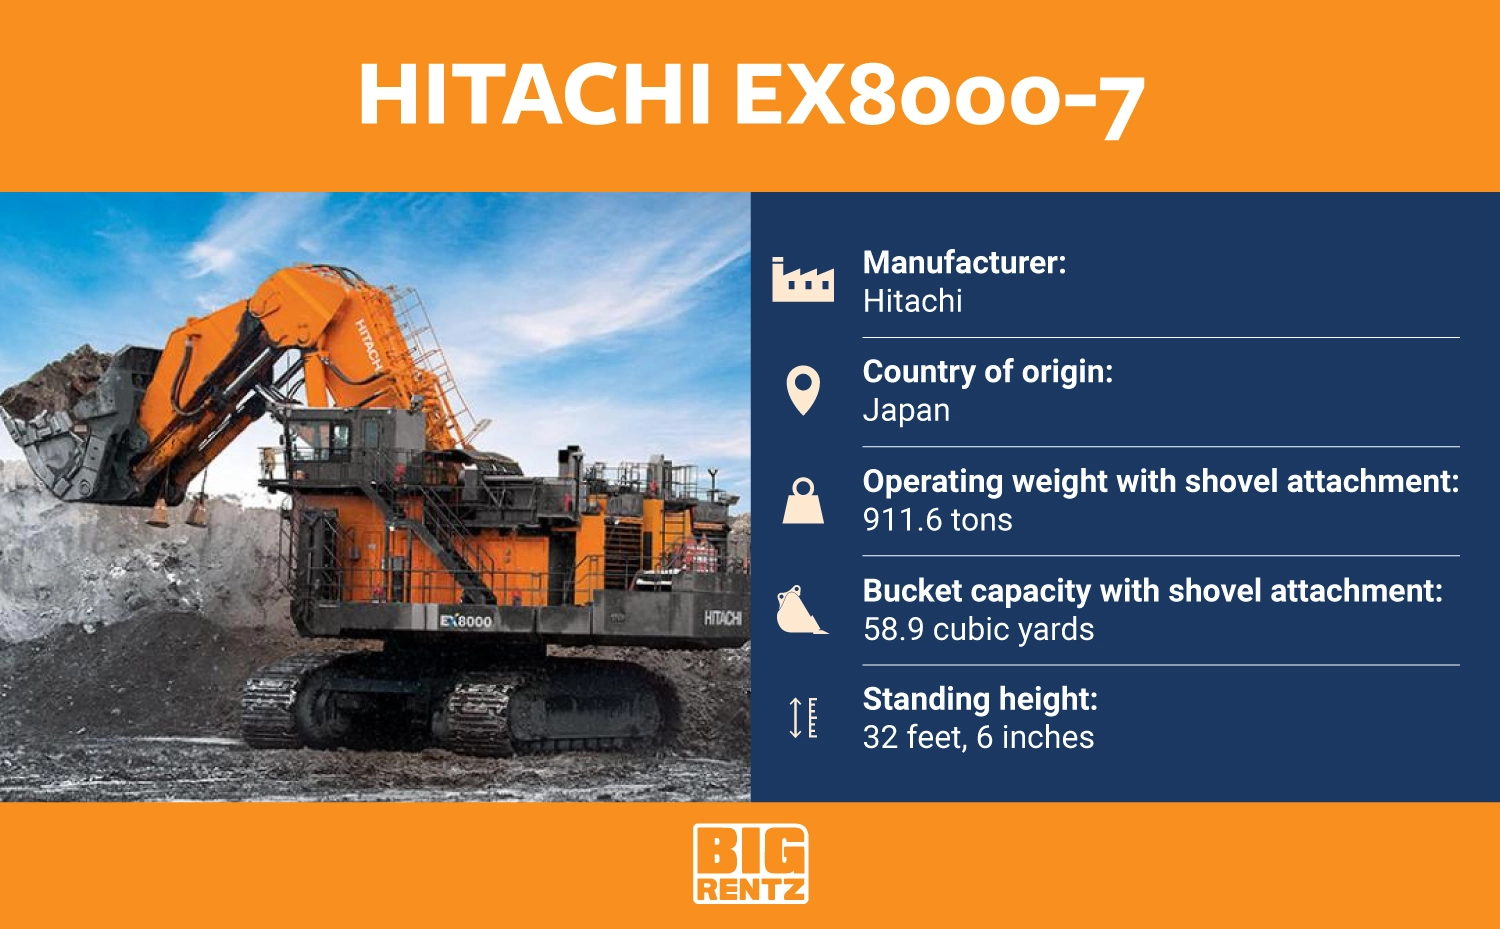 Hitachi ex8000-7 specs